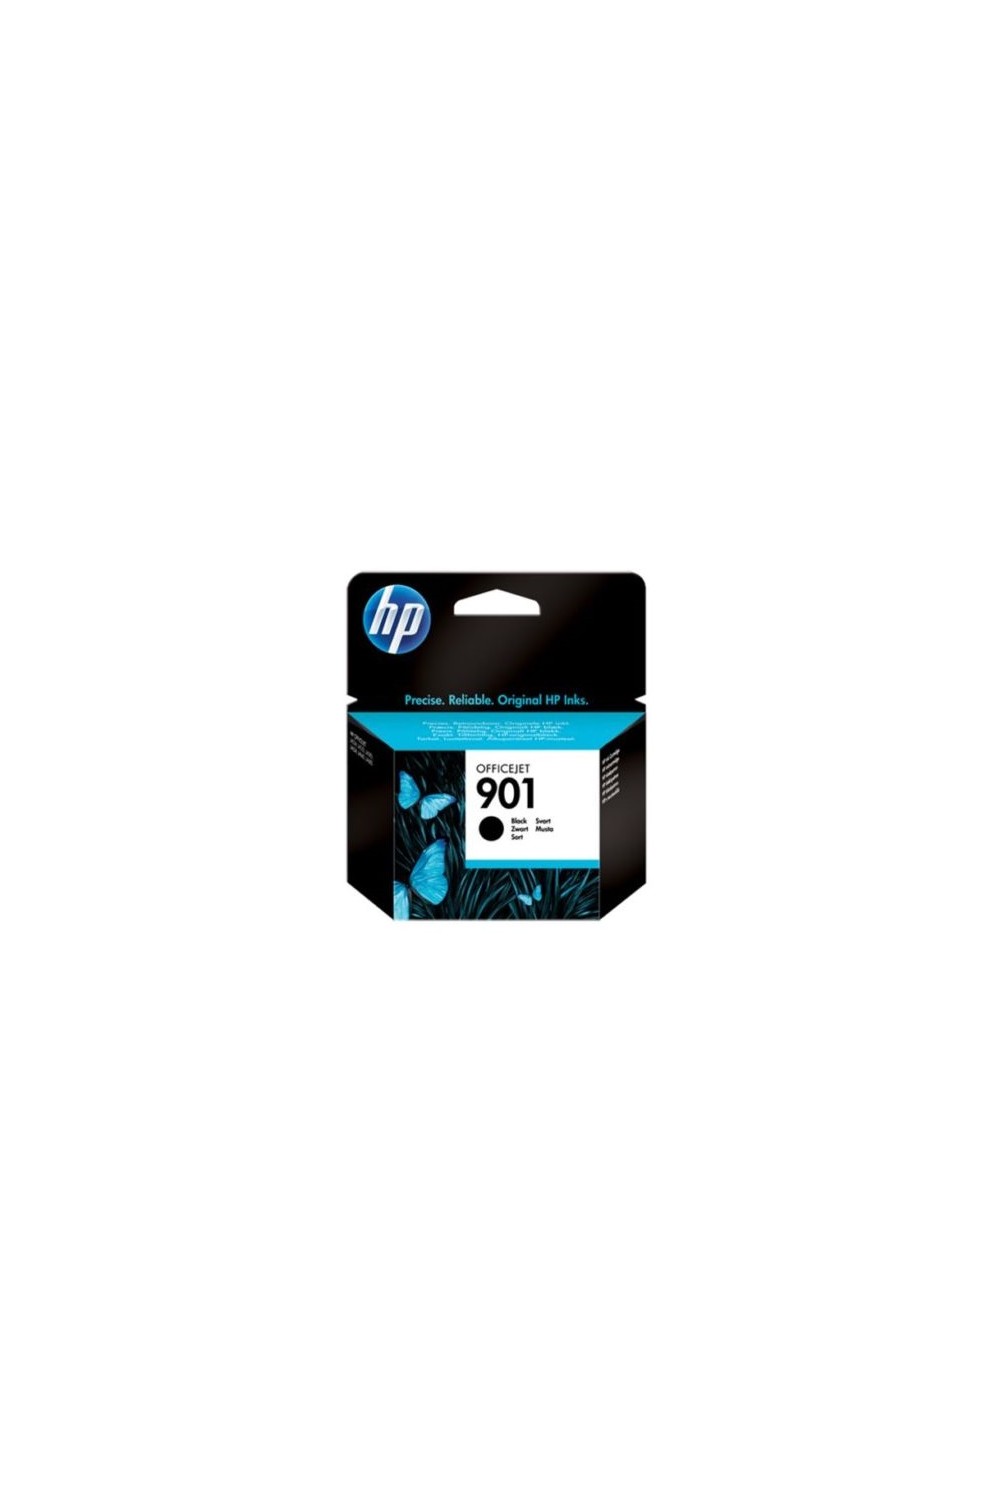 HP 901 black office get ink cartridge